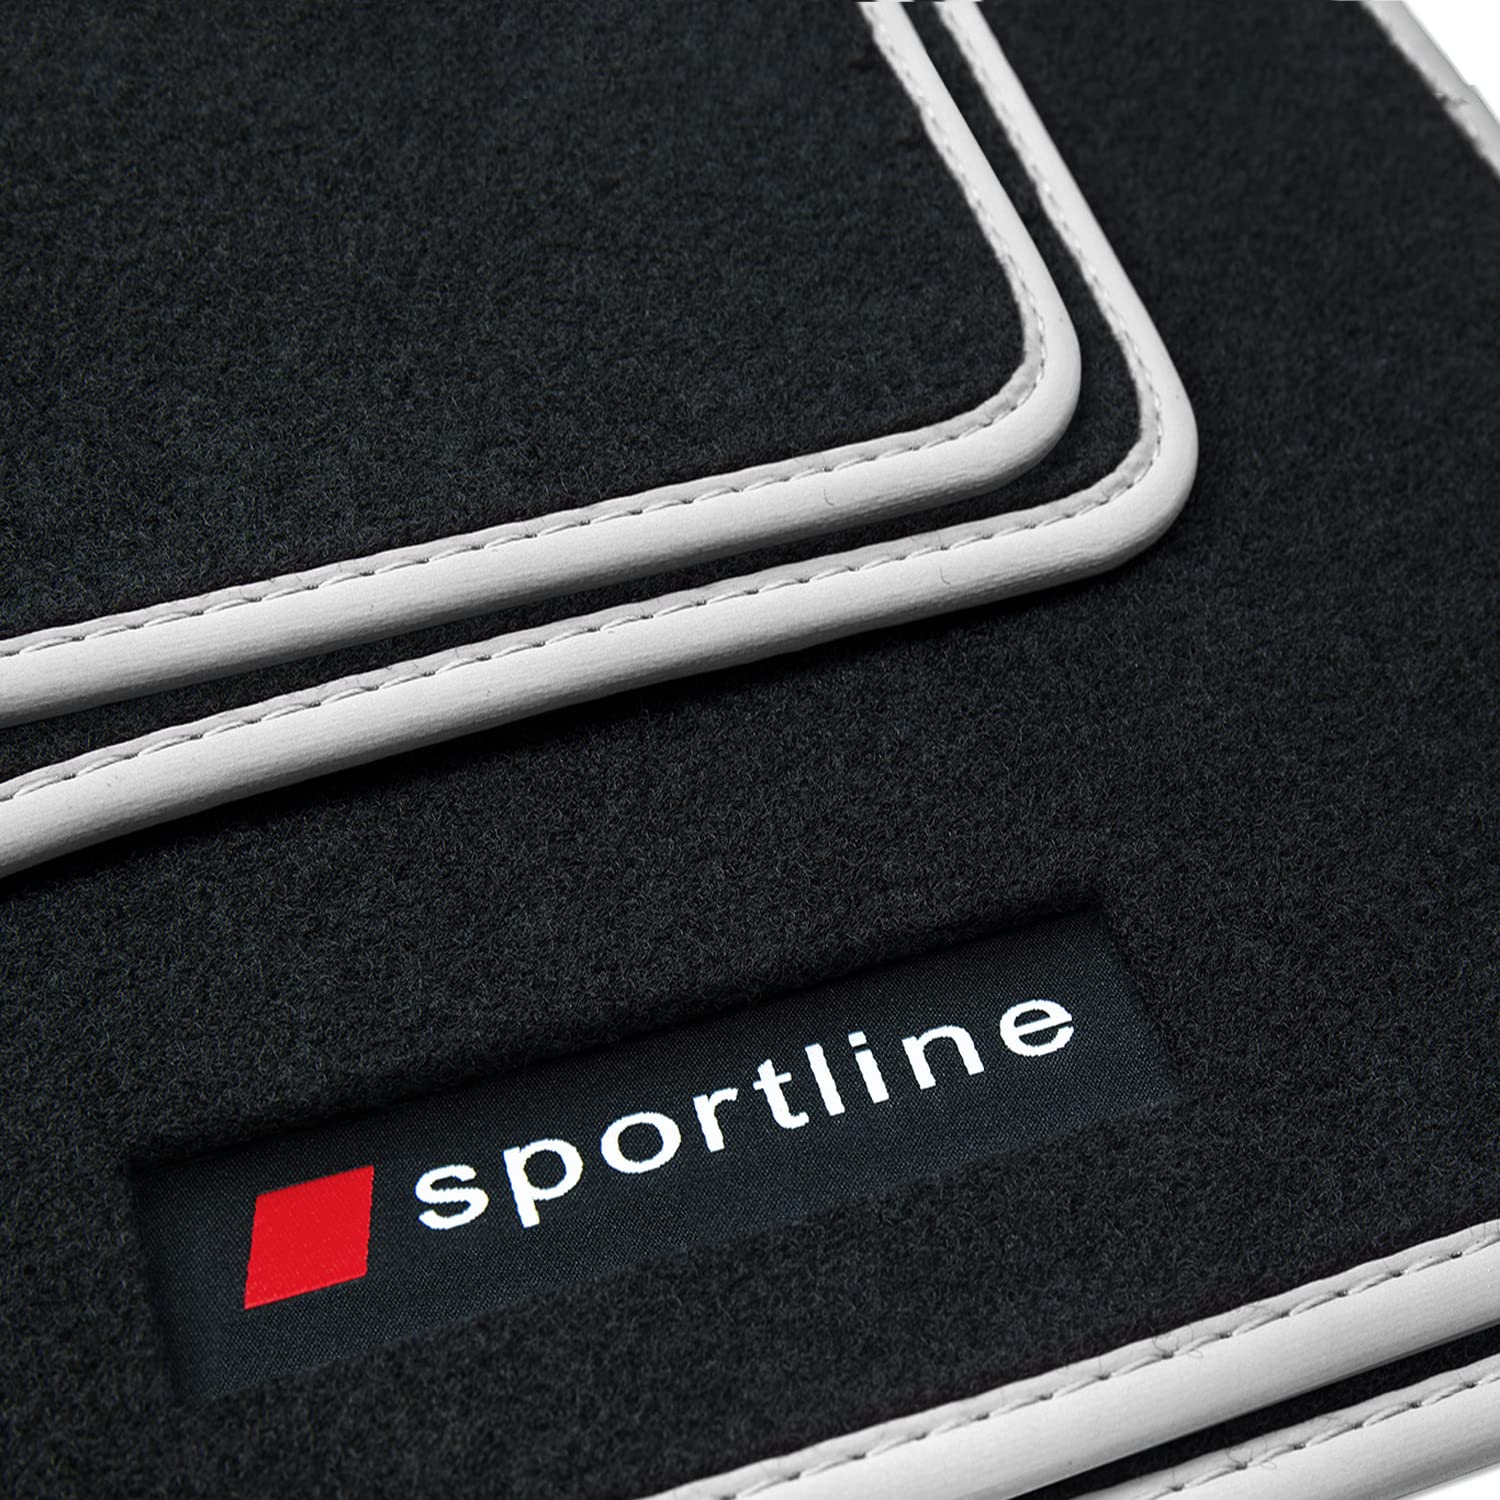 teileplus24 PV100 Fußmatten Gummimatten Sportline Design kompatibel mit Audi A1 8X Sportback Limo 2010-2018, Bandeinfassung:Silber von teileplus24